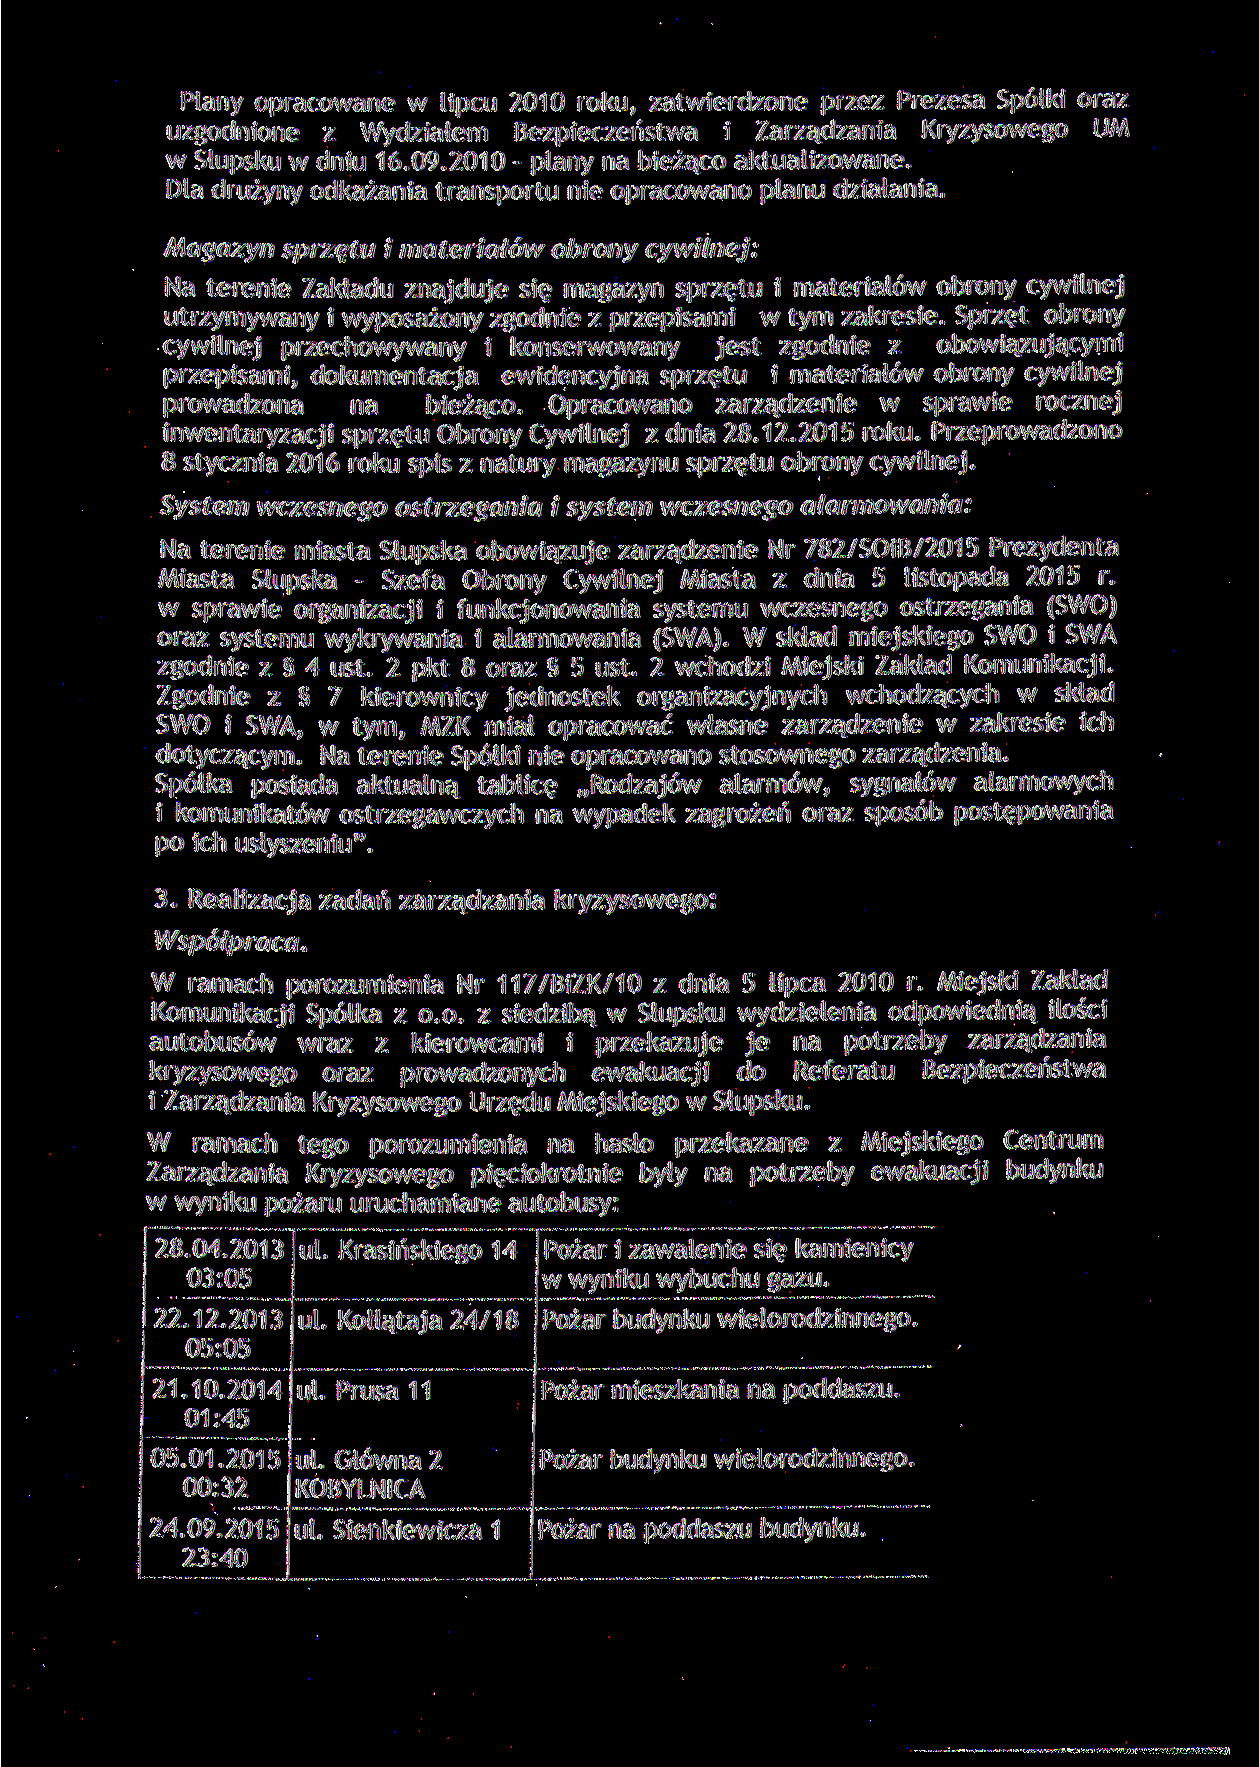 Plany opracowane w lipcu 2010 roku, zatwierdzone przez Prezesa Spotki oraz uzgodnione z Wydziałem Bezpieczeństwa i Zarządzania Kryzysowego UM w Stupsku w dniu 16.09.